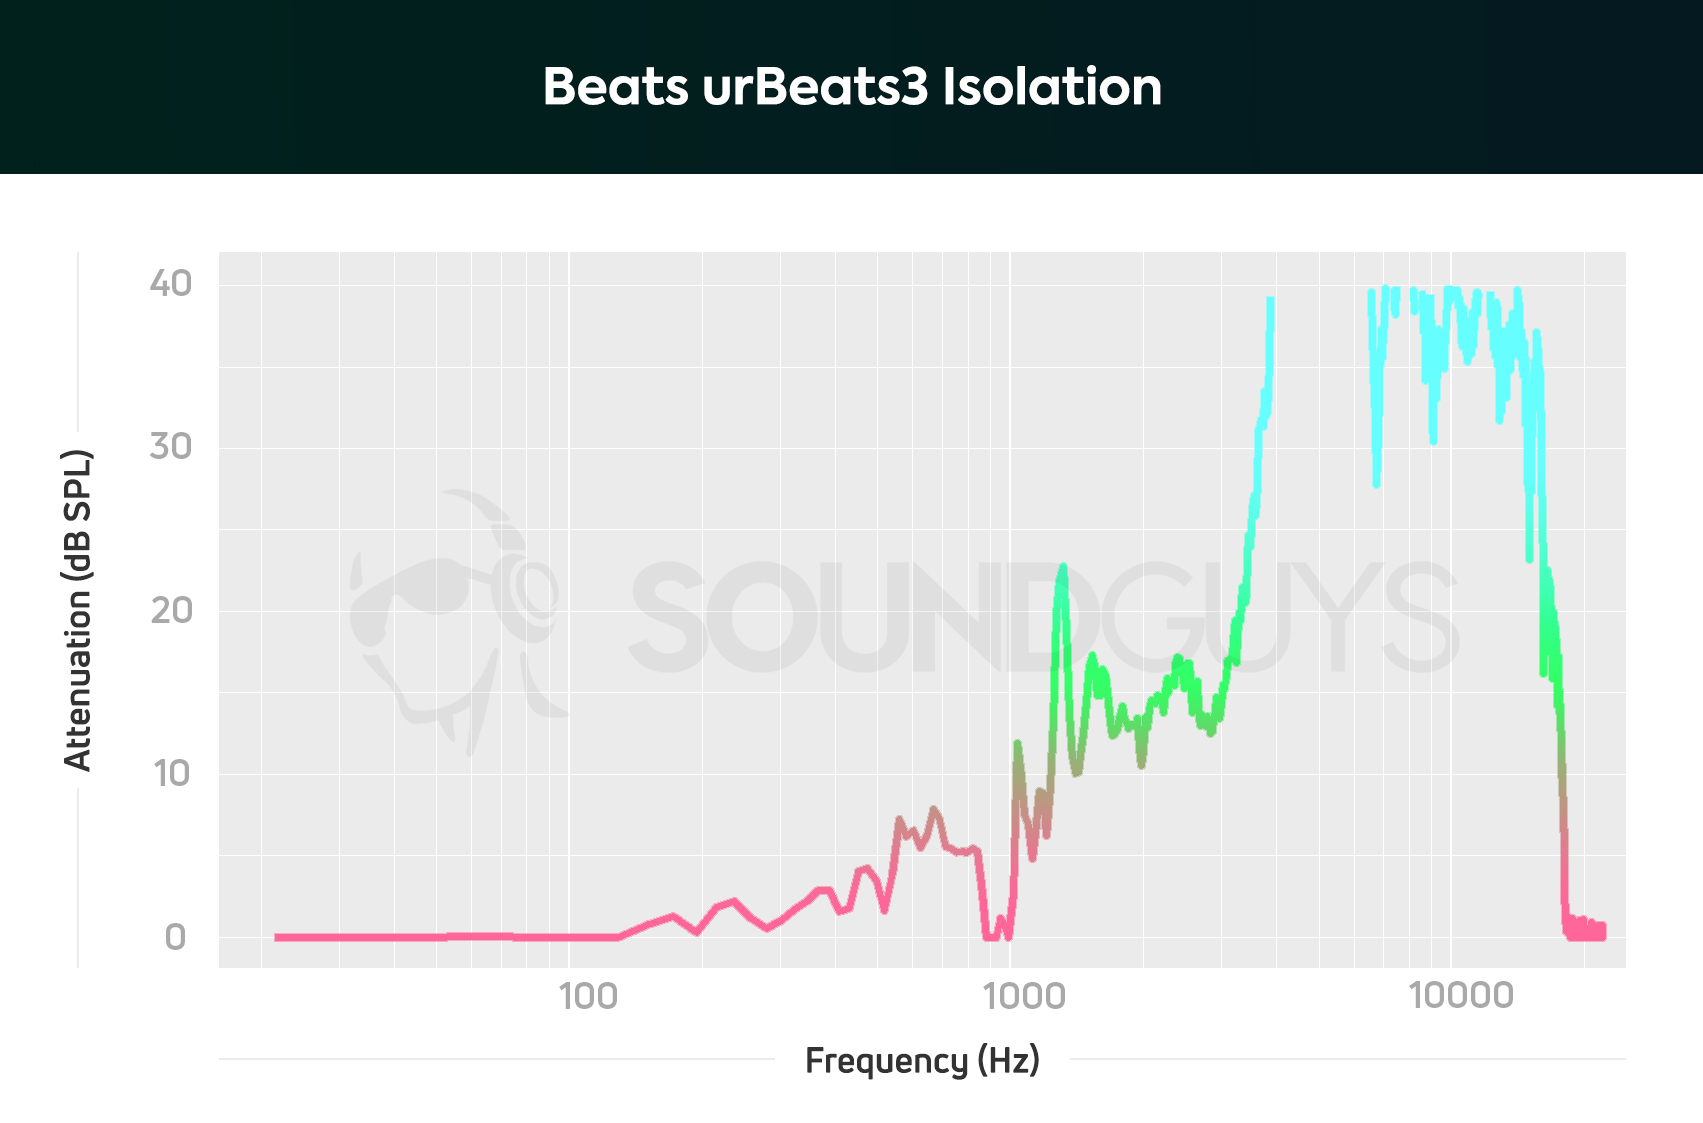 Beats urBeats3 isolation chart.